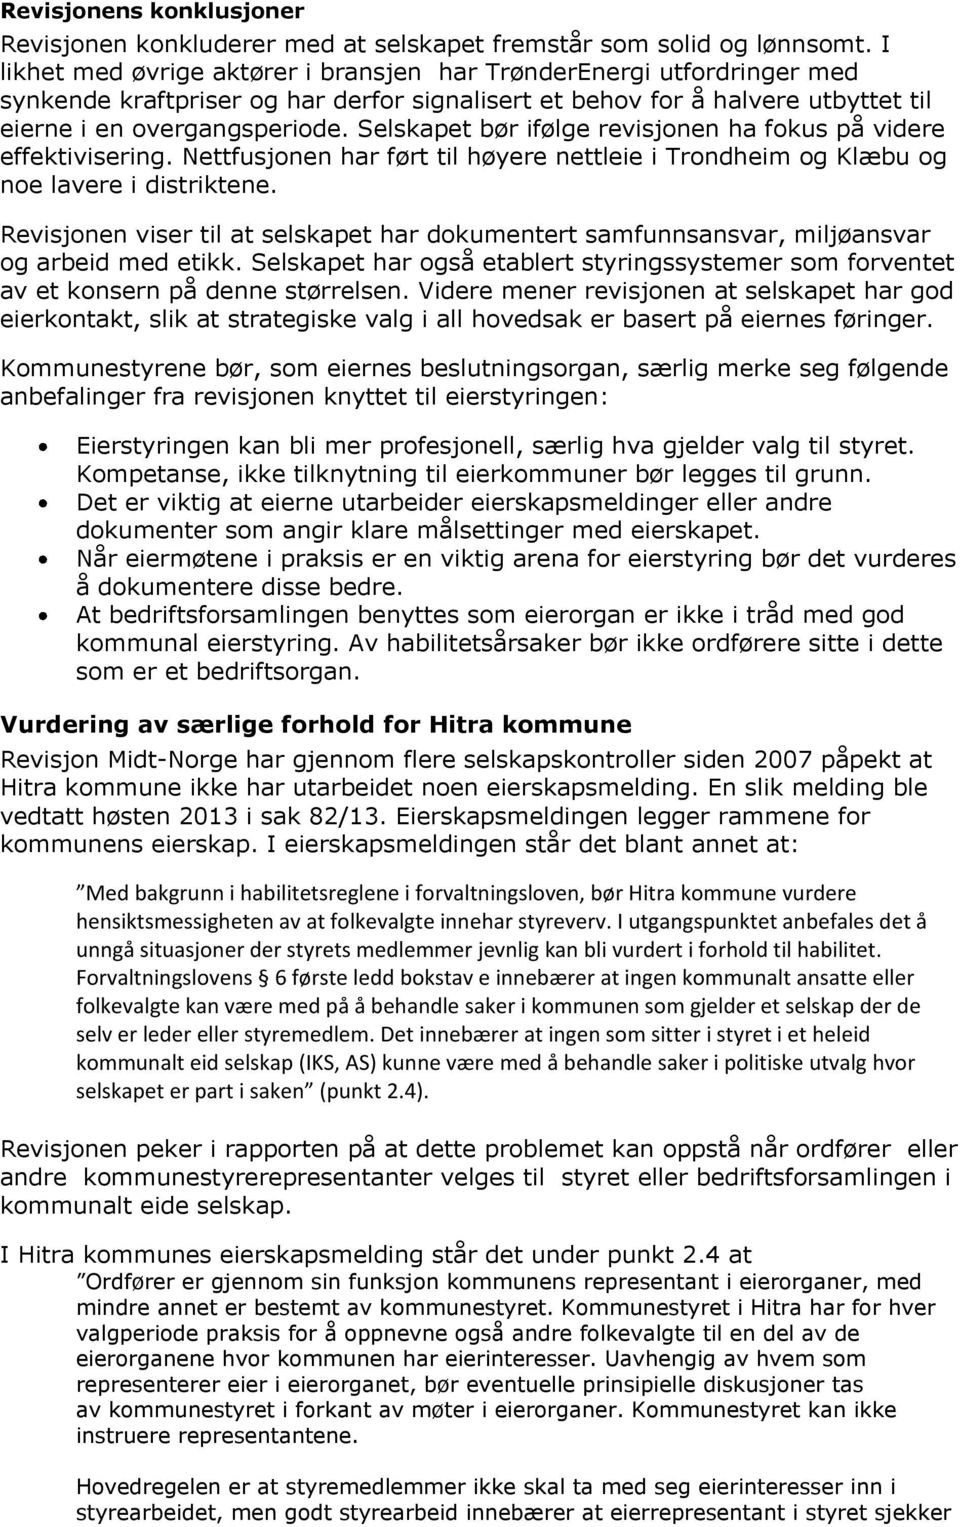 Selskapet bør ifølge revisjonen ha fokus på videre effektivisering. Nettfusjonen har ført til høyere nettleie i Trondheim og Klæbu og noe lavere i distriktene.